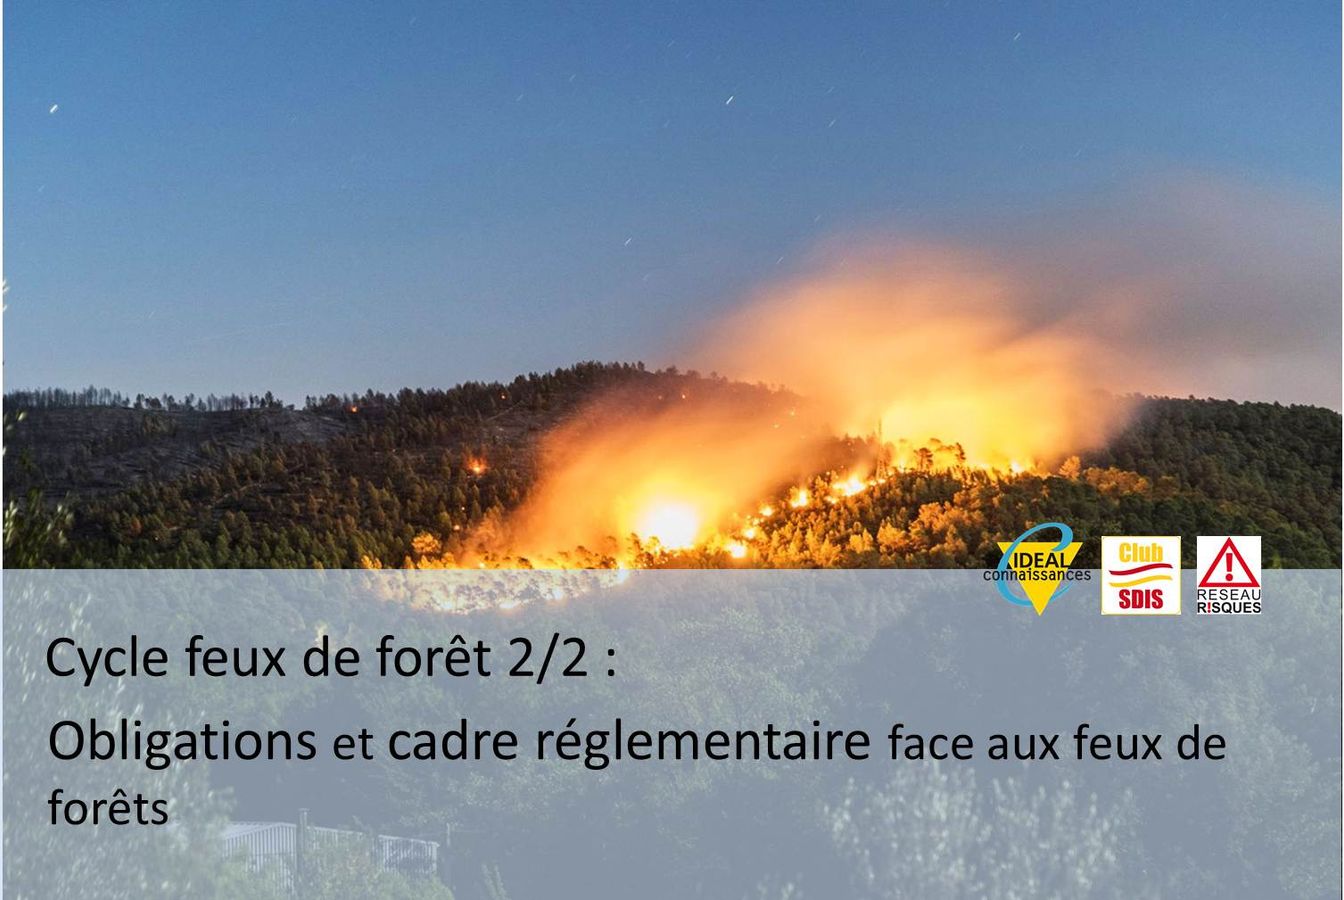 [Cycle feux de forêts] Obligations et cadre réglementaire face aux feux de forêts